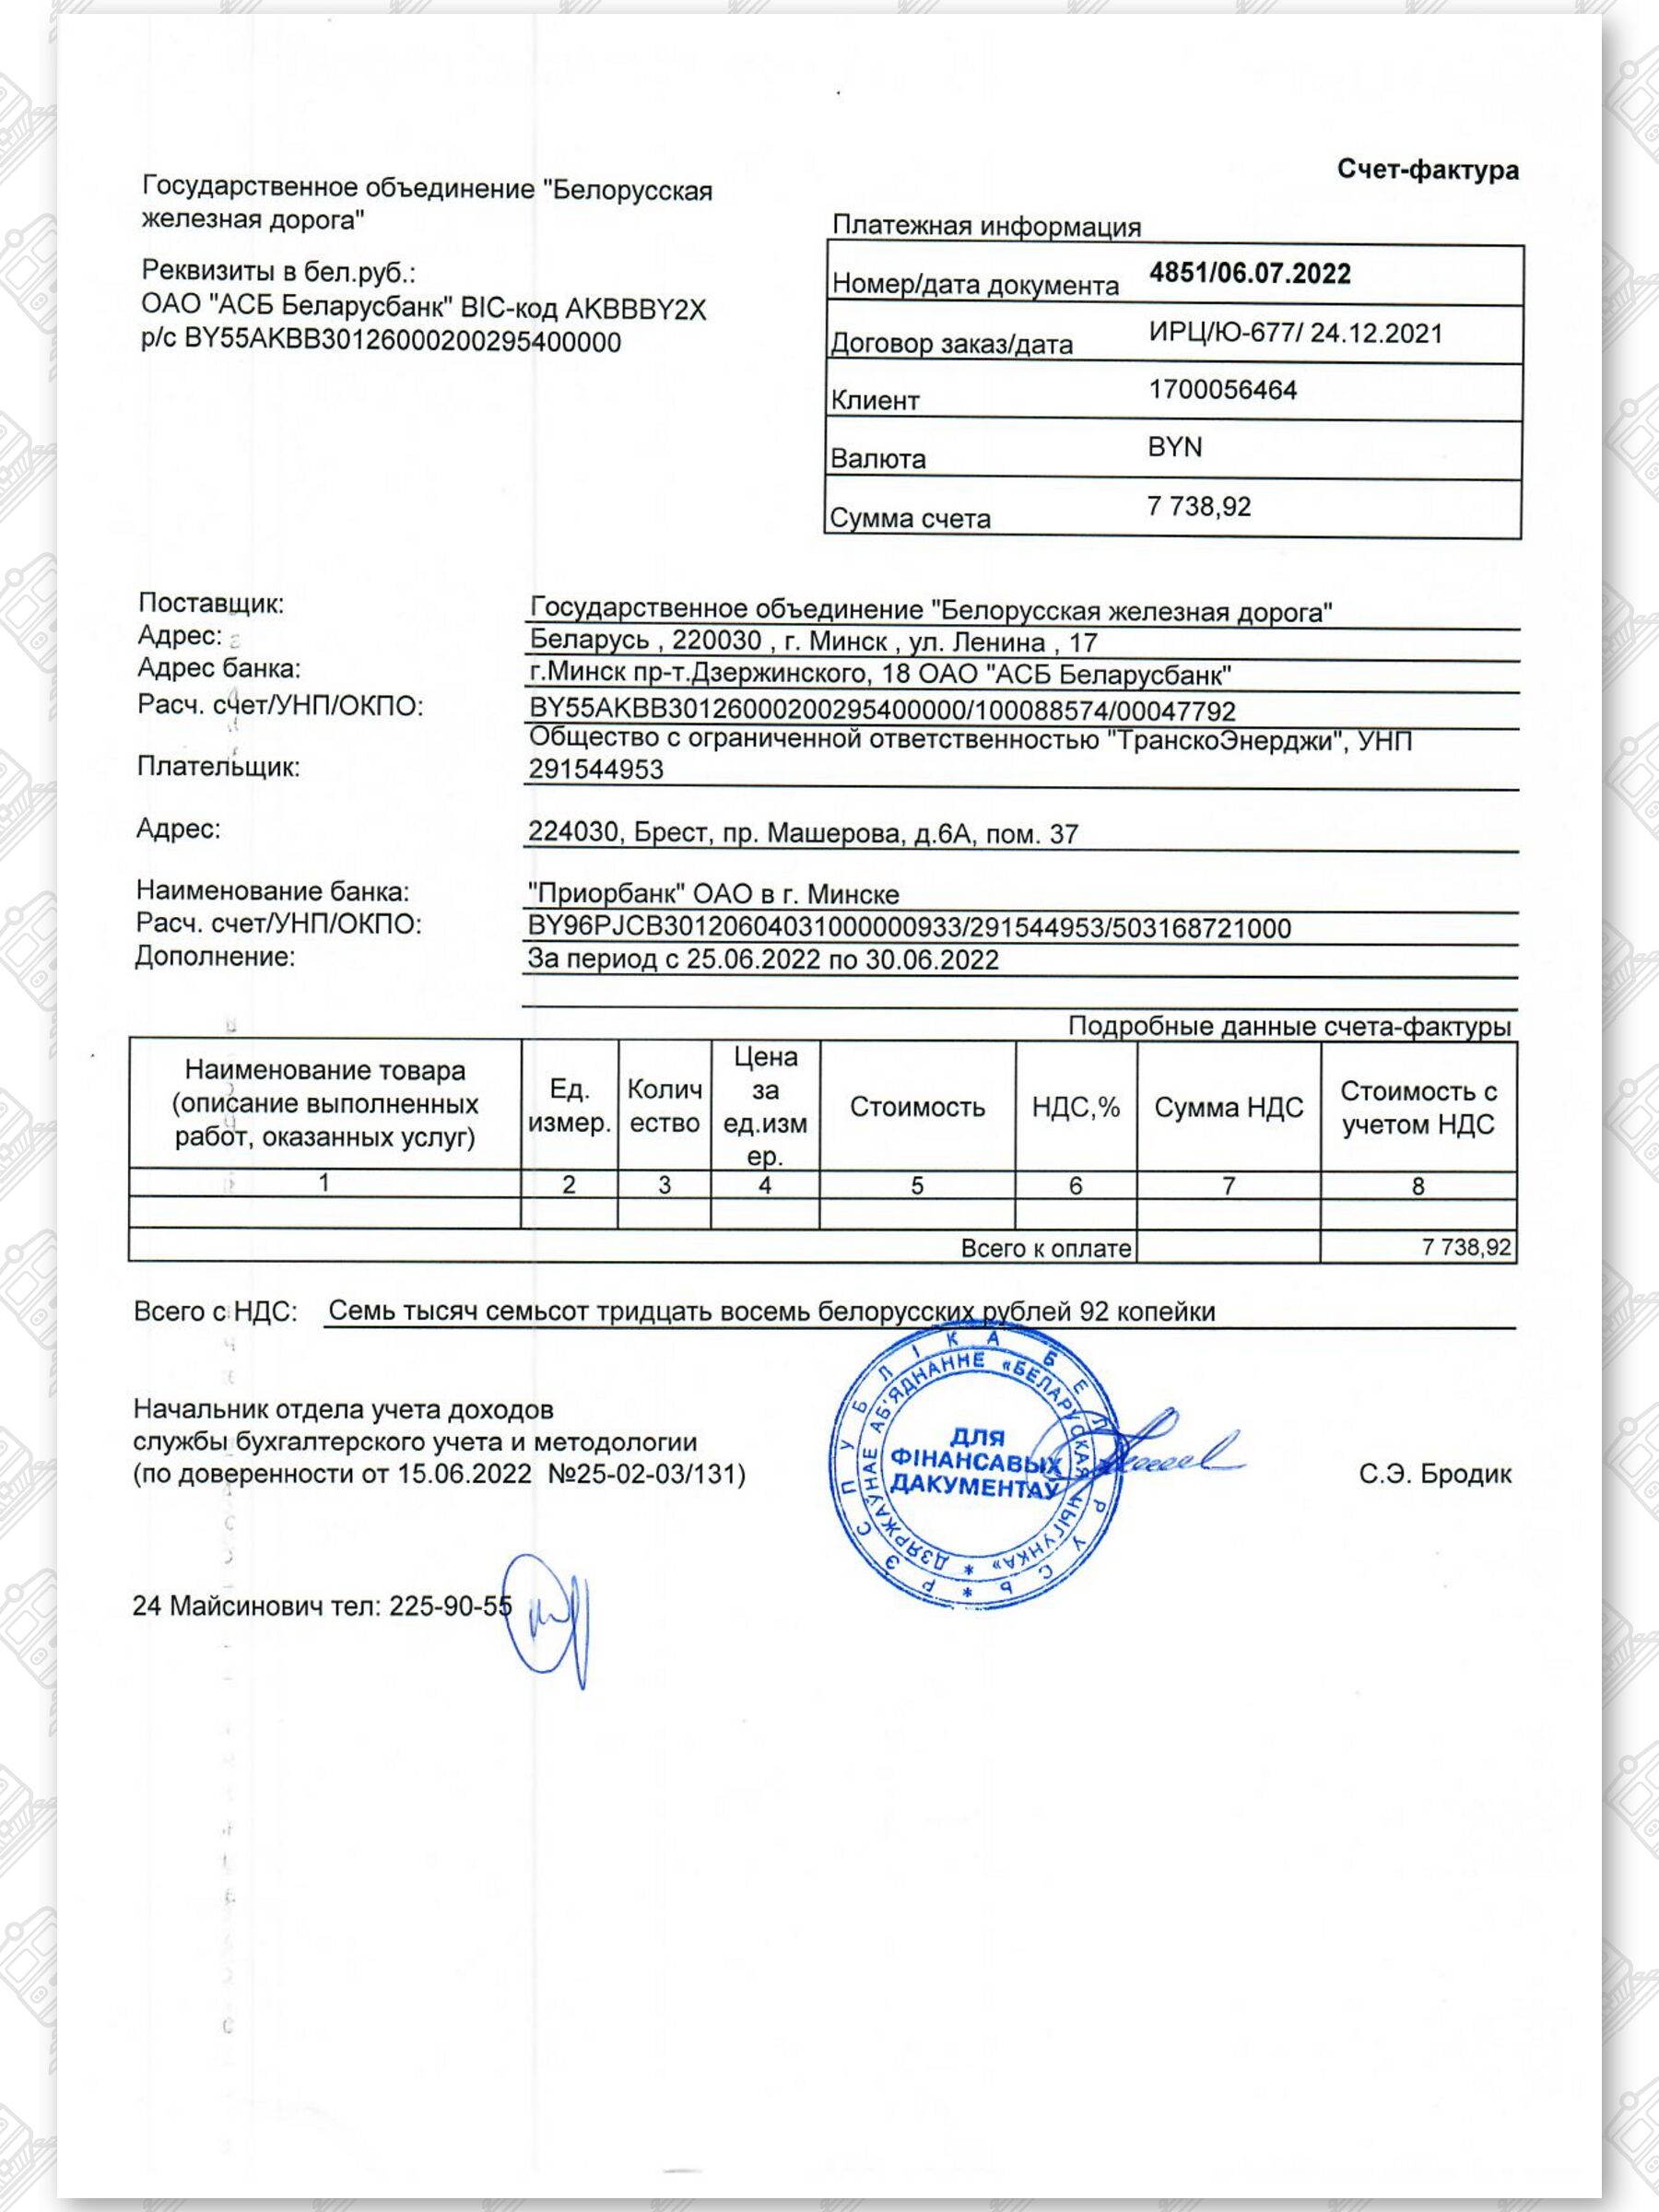 4 - Счет-фактура к оплате за провозные платежи «ТранскоЭнерджи»